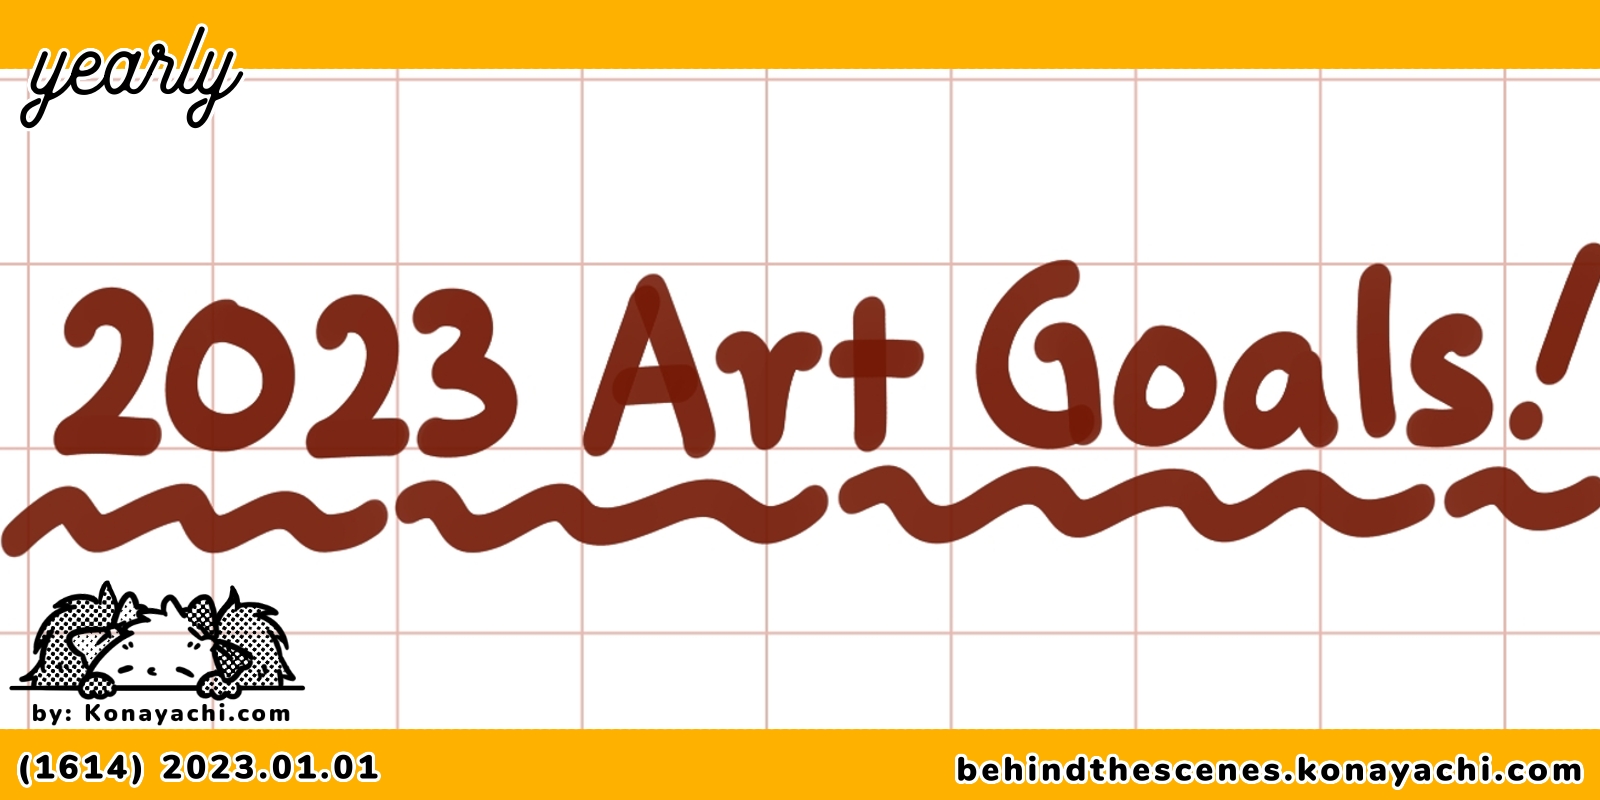 (1614) 2023 Art Goals